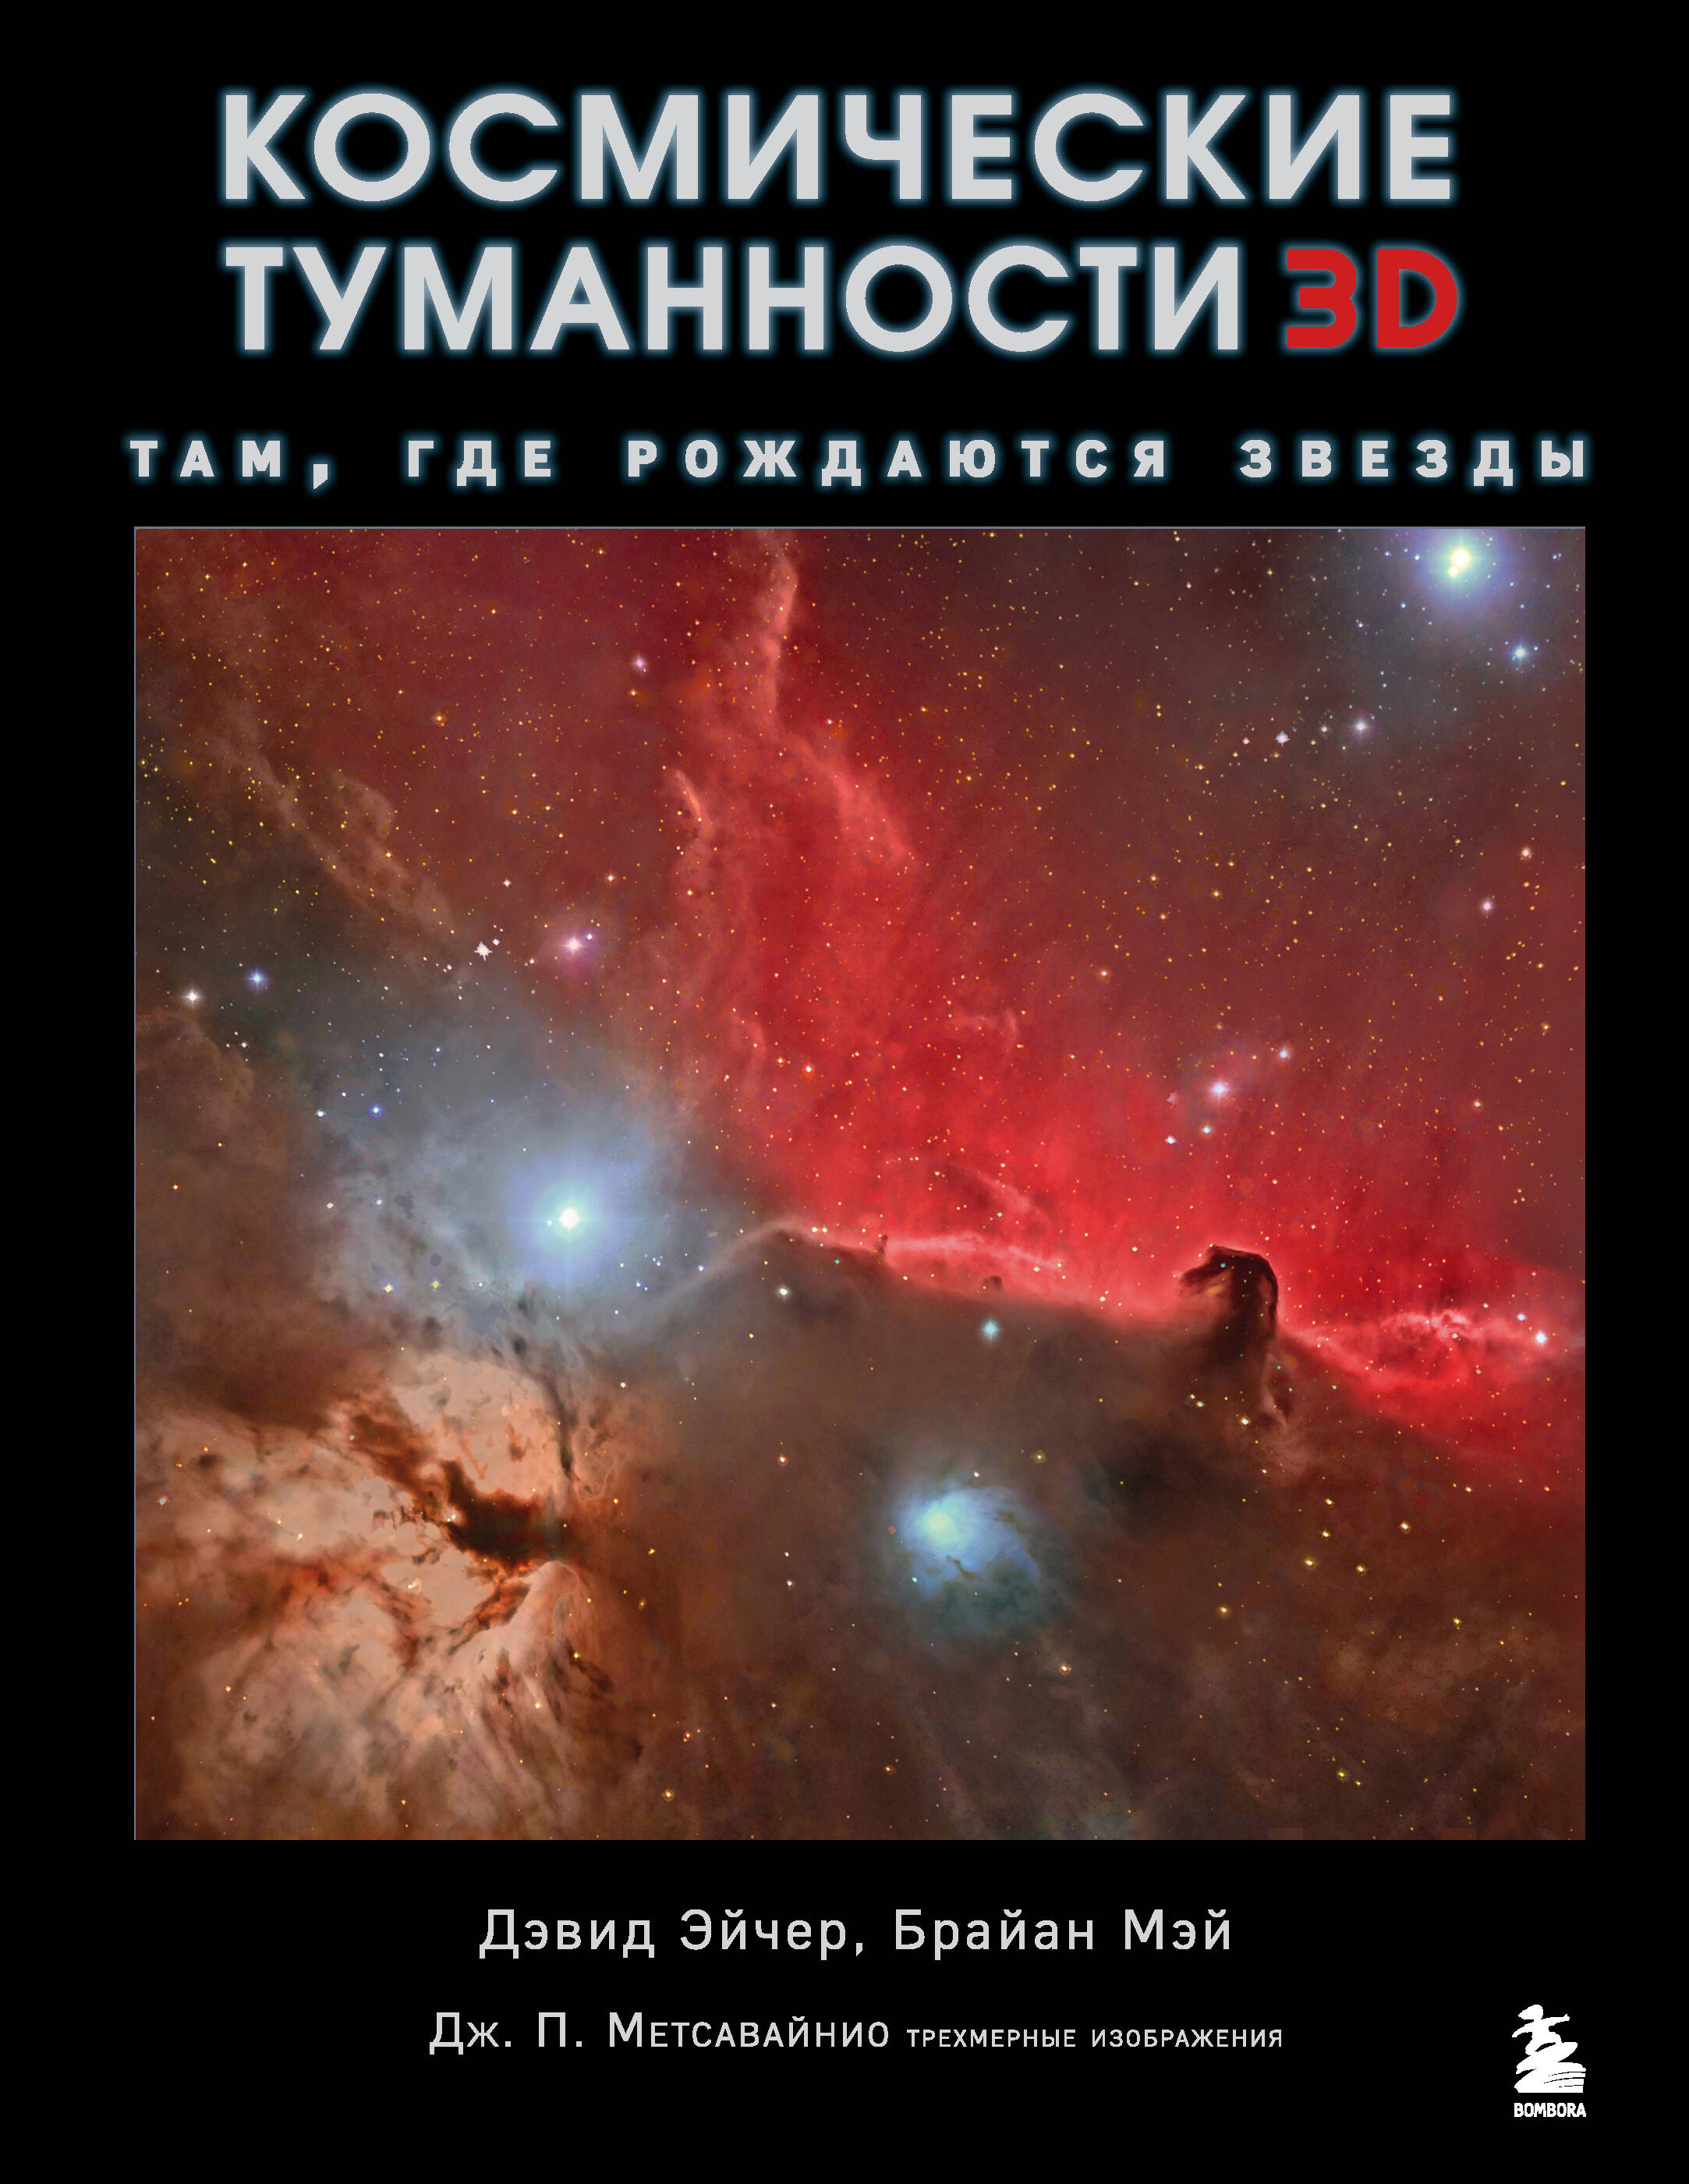 Мэй Брайан, Эйчер Дэвид Джон - Космические туманности 3D: там, где рождаются звезды